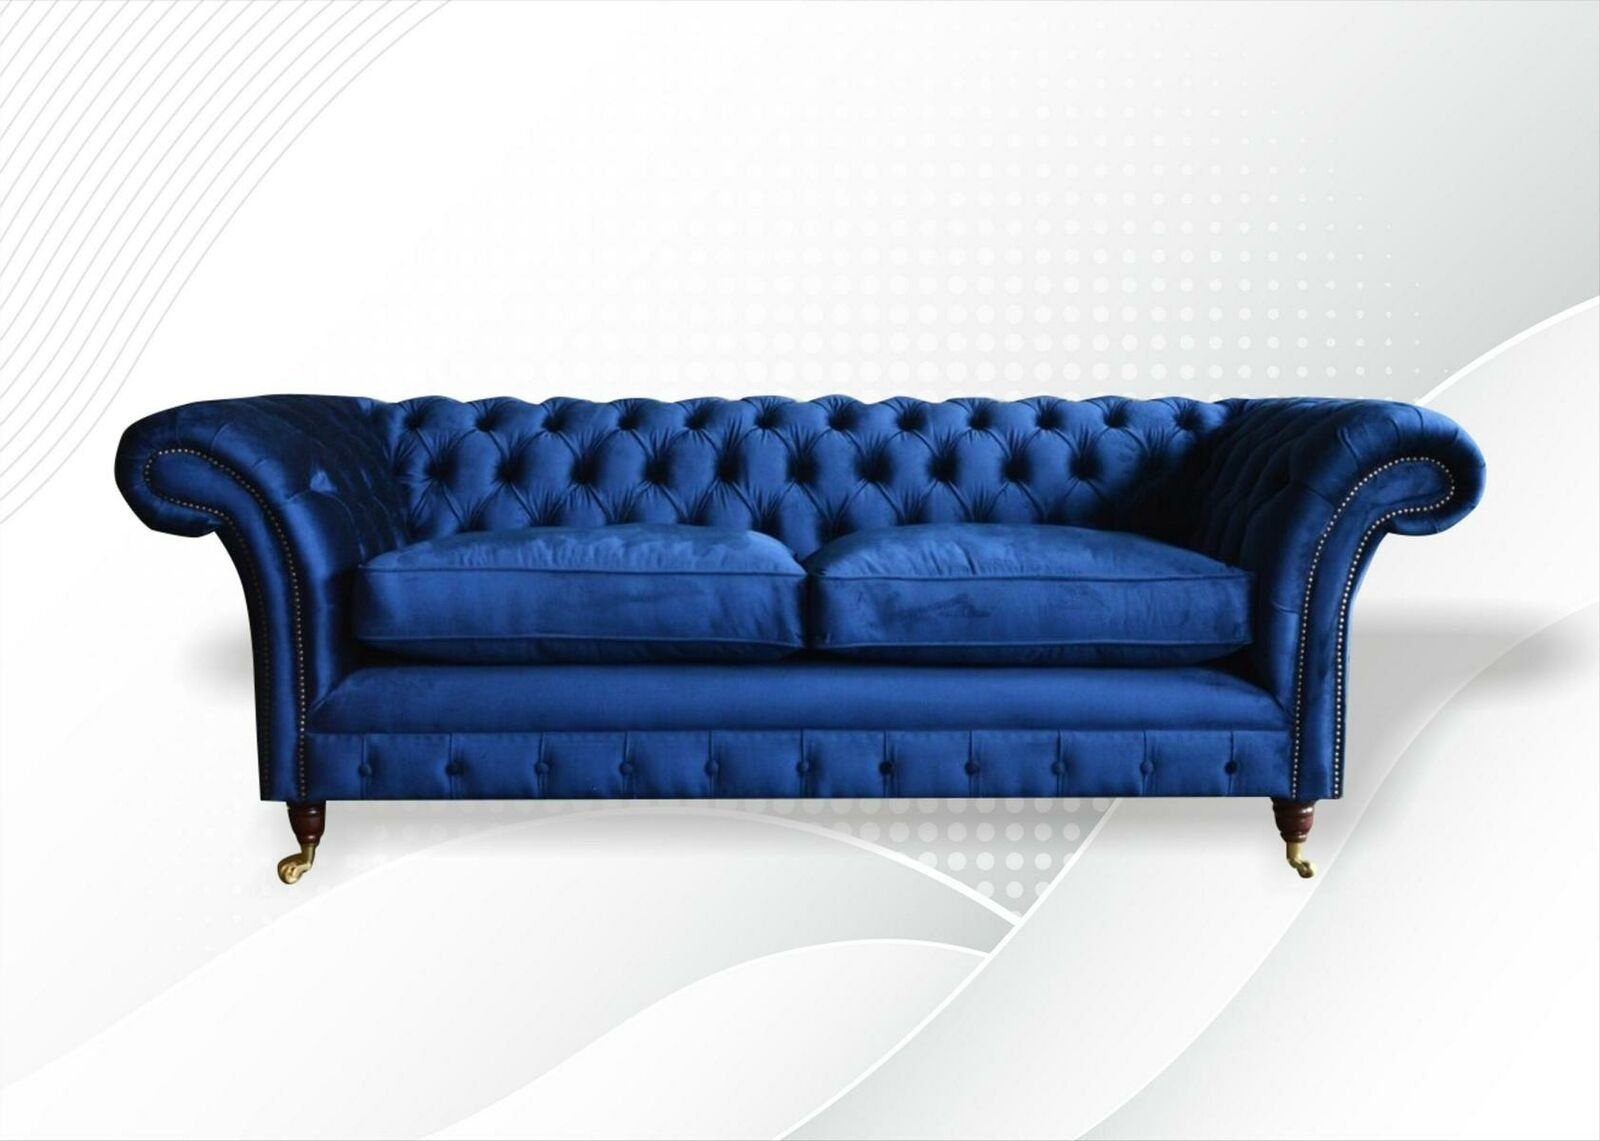 JVmoebel Chesterfield-Sofa Blauer Chesterfield Design 3-Sitzer Neu, in luxus Europe Wohnzimmer Made Möbel